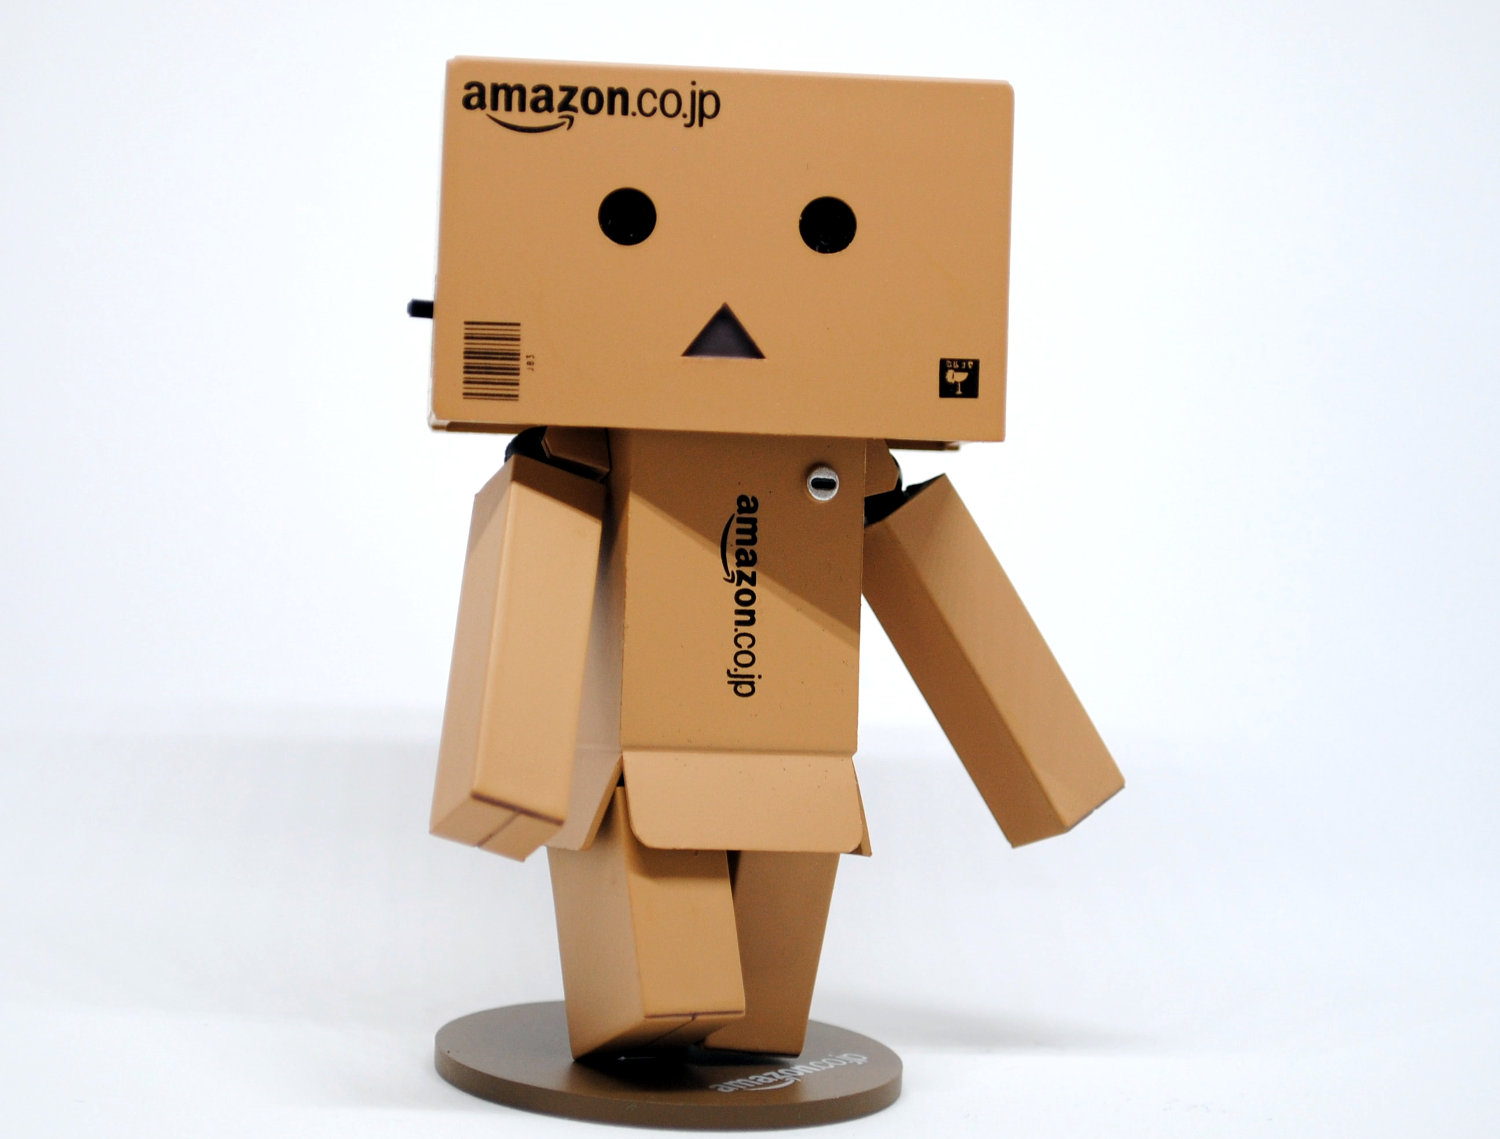 Amazon планує найняти ще 100 тис працівників через попит на онлайн замовлення 2